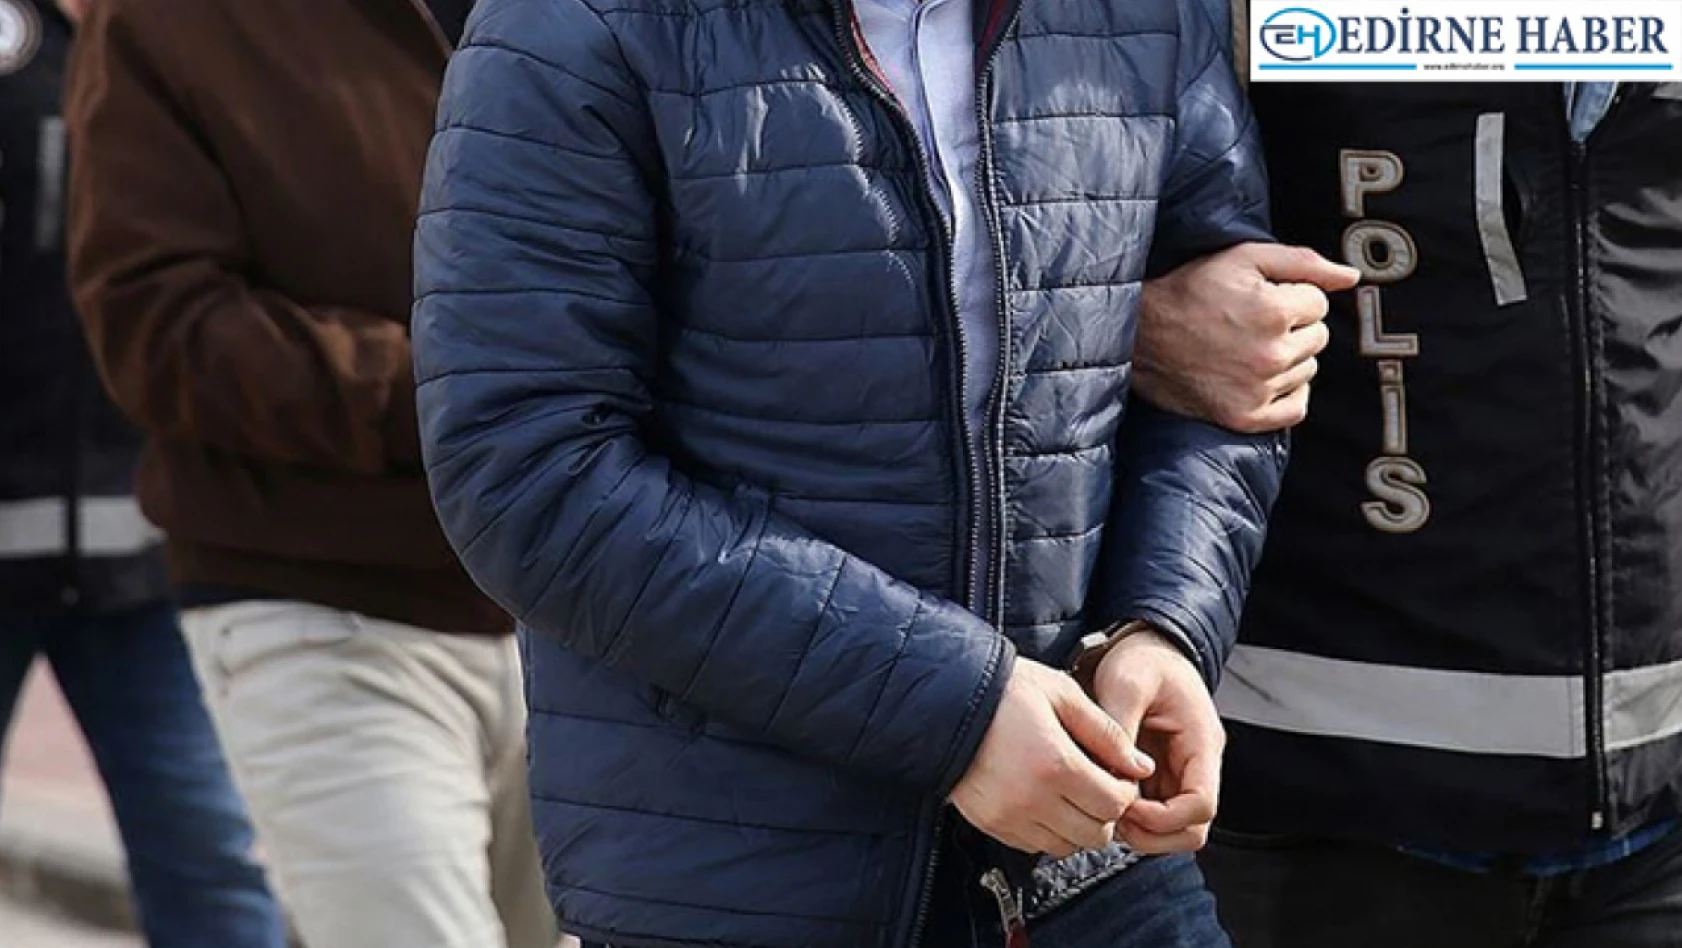 Edirne'de uyuşturucu madde ticaret yapmak suçundan aranması bulunan zanlı tutuklandı